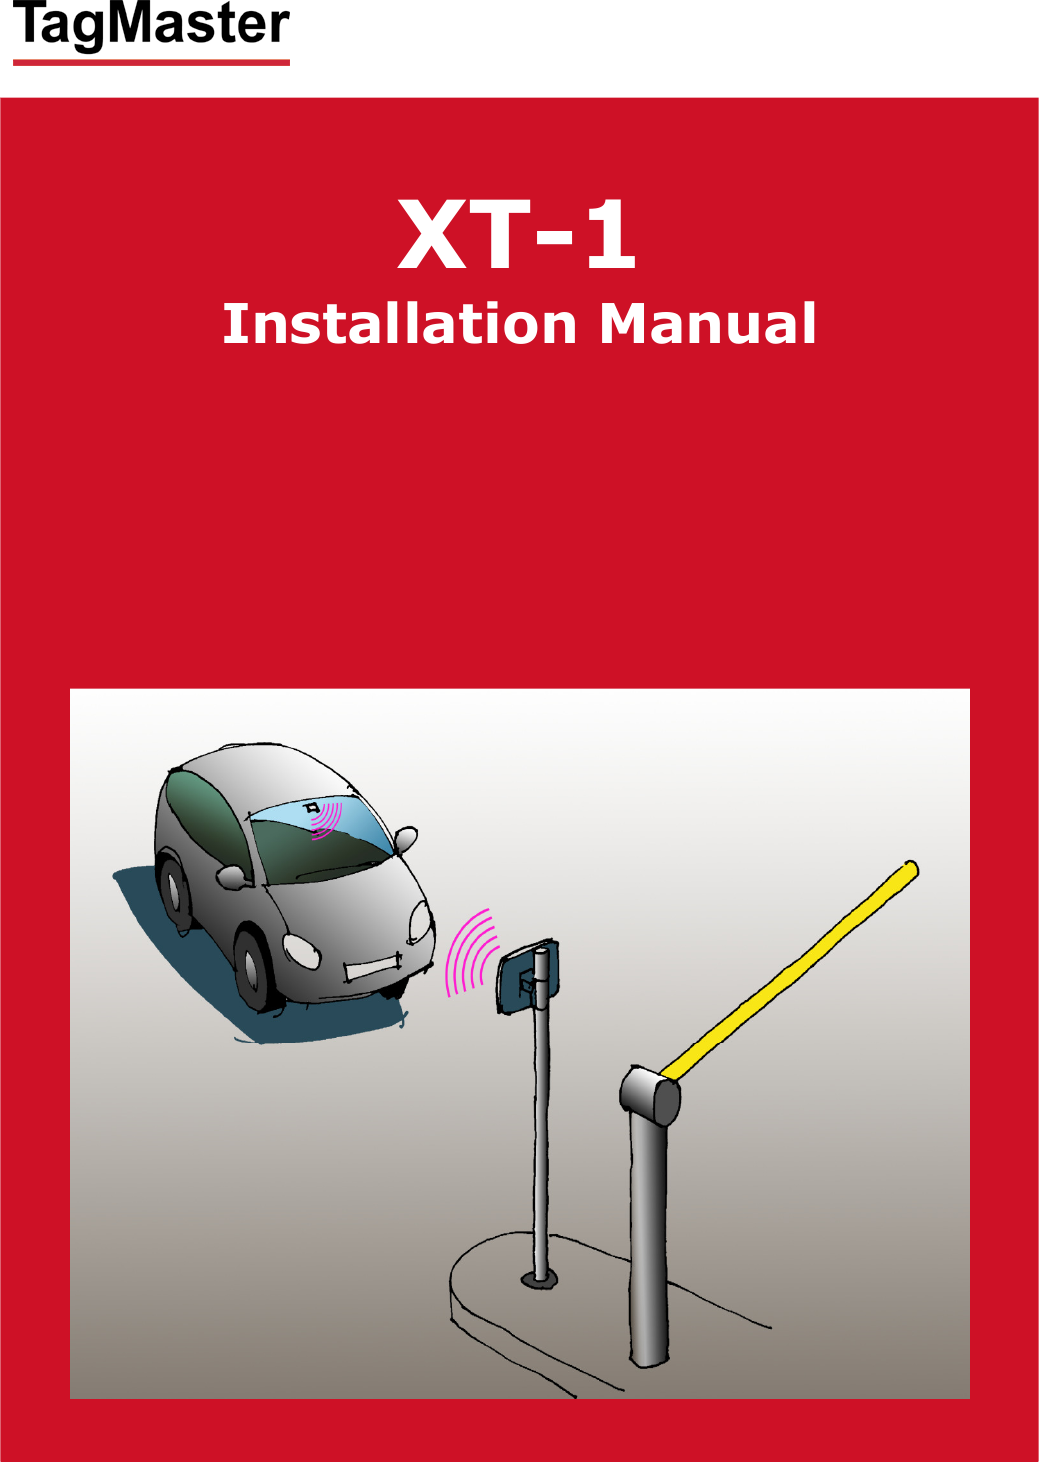         XT-1 Installation Manual      